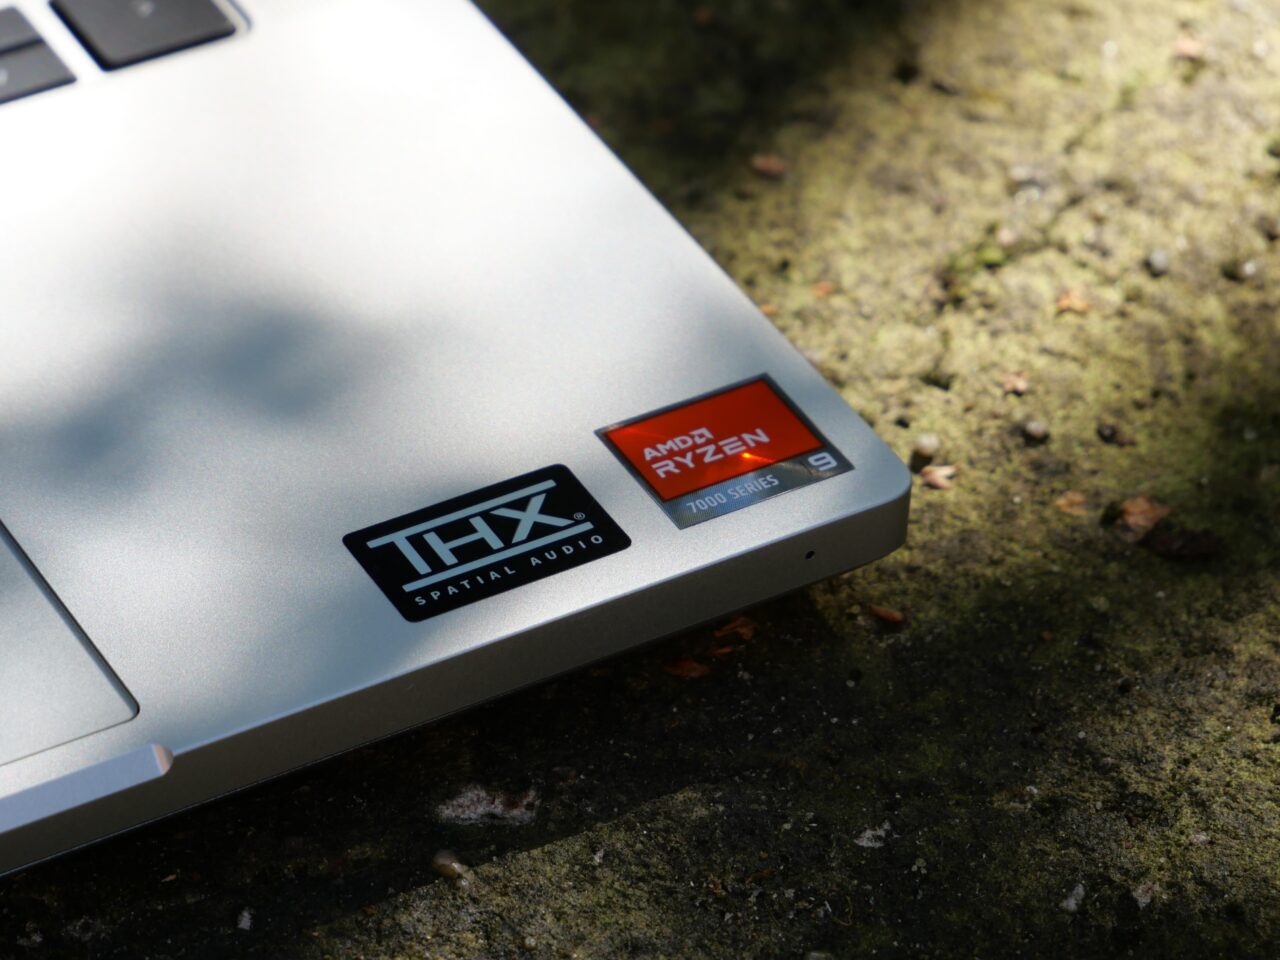 Część srebrnego laptopa z naklejkami THX Spatial Audio i AMD Ryzen 9 7000 Series na kamiennym podłożu.